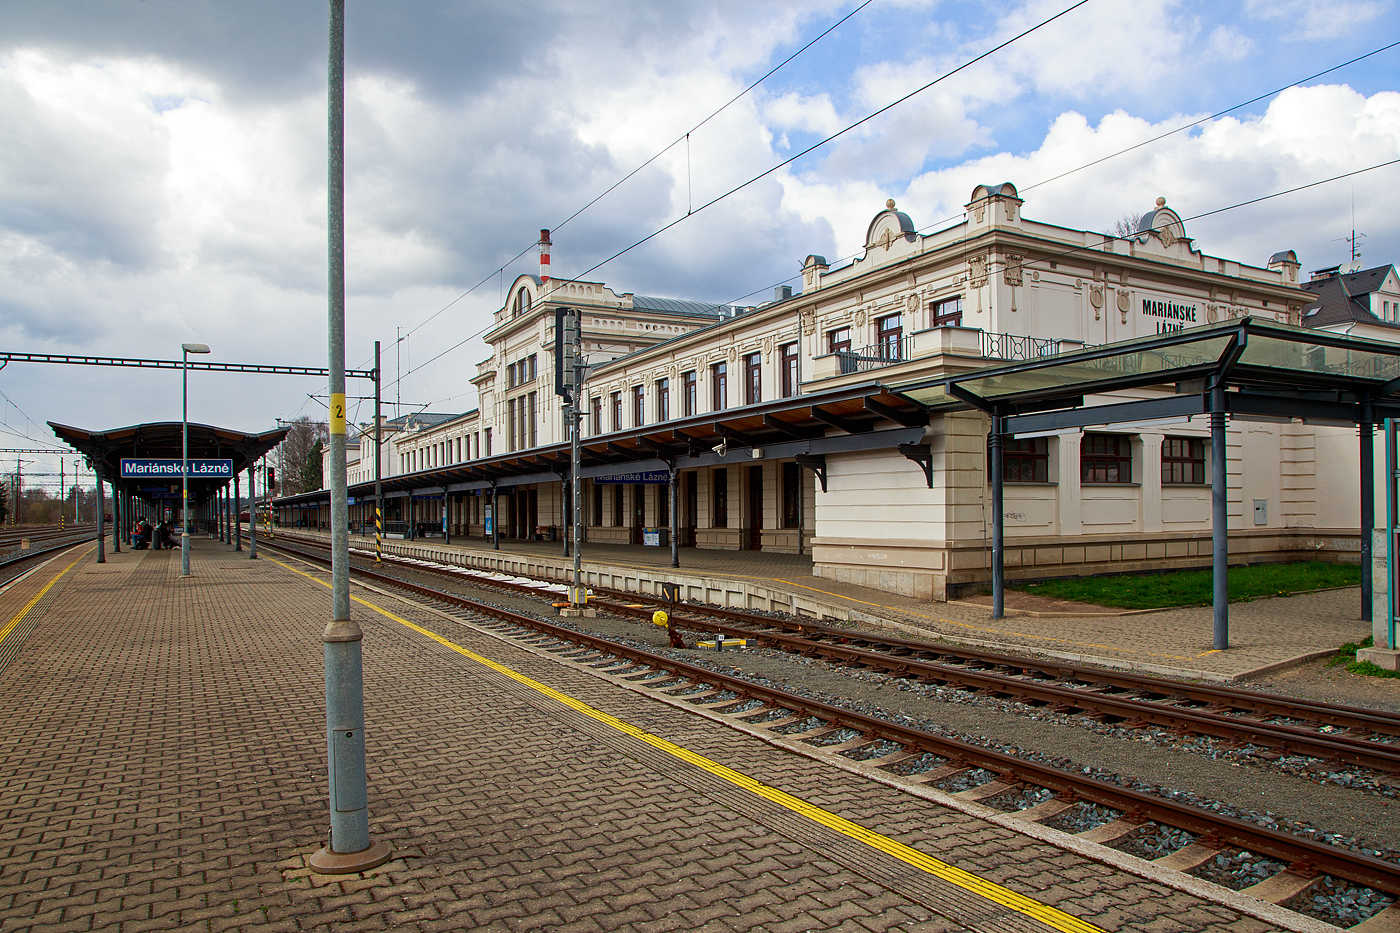 Der Bahnhof Mariánské Lázně (Marienbad) von der Gleisseite am 19.04.2023.

Der Bahnhof liegt an der Bahnstrecke Plzeň – Cheb (Pilsen - Eger), der ehemaligen k.k. priv. Kaiser-Franz-Josephs-Bahn (KFJB), heutige KBS SŽDC 178. Beim Bahnhof zweigt zudem die Bahnstrecke Mariánské Lázně – Karlovy Vary (Marienbad – Karlsbad) - KBS SŽDC 149 ab.

Der Bahnhof wurde 1872 erbaut und 1902 im Jugendstil umgebaut. Zwischen 1902 und 1952 hielt  vor dem Bahnhof die Straßenbahn, die später (nach ihrer Einstellung) durch Oberleitungsbusse ersetzt wurde.

In den Jahren 2008–2011 wurde das Bahnhofsgebäude einschließlich des historischen Gebäudes renoviert. 
